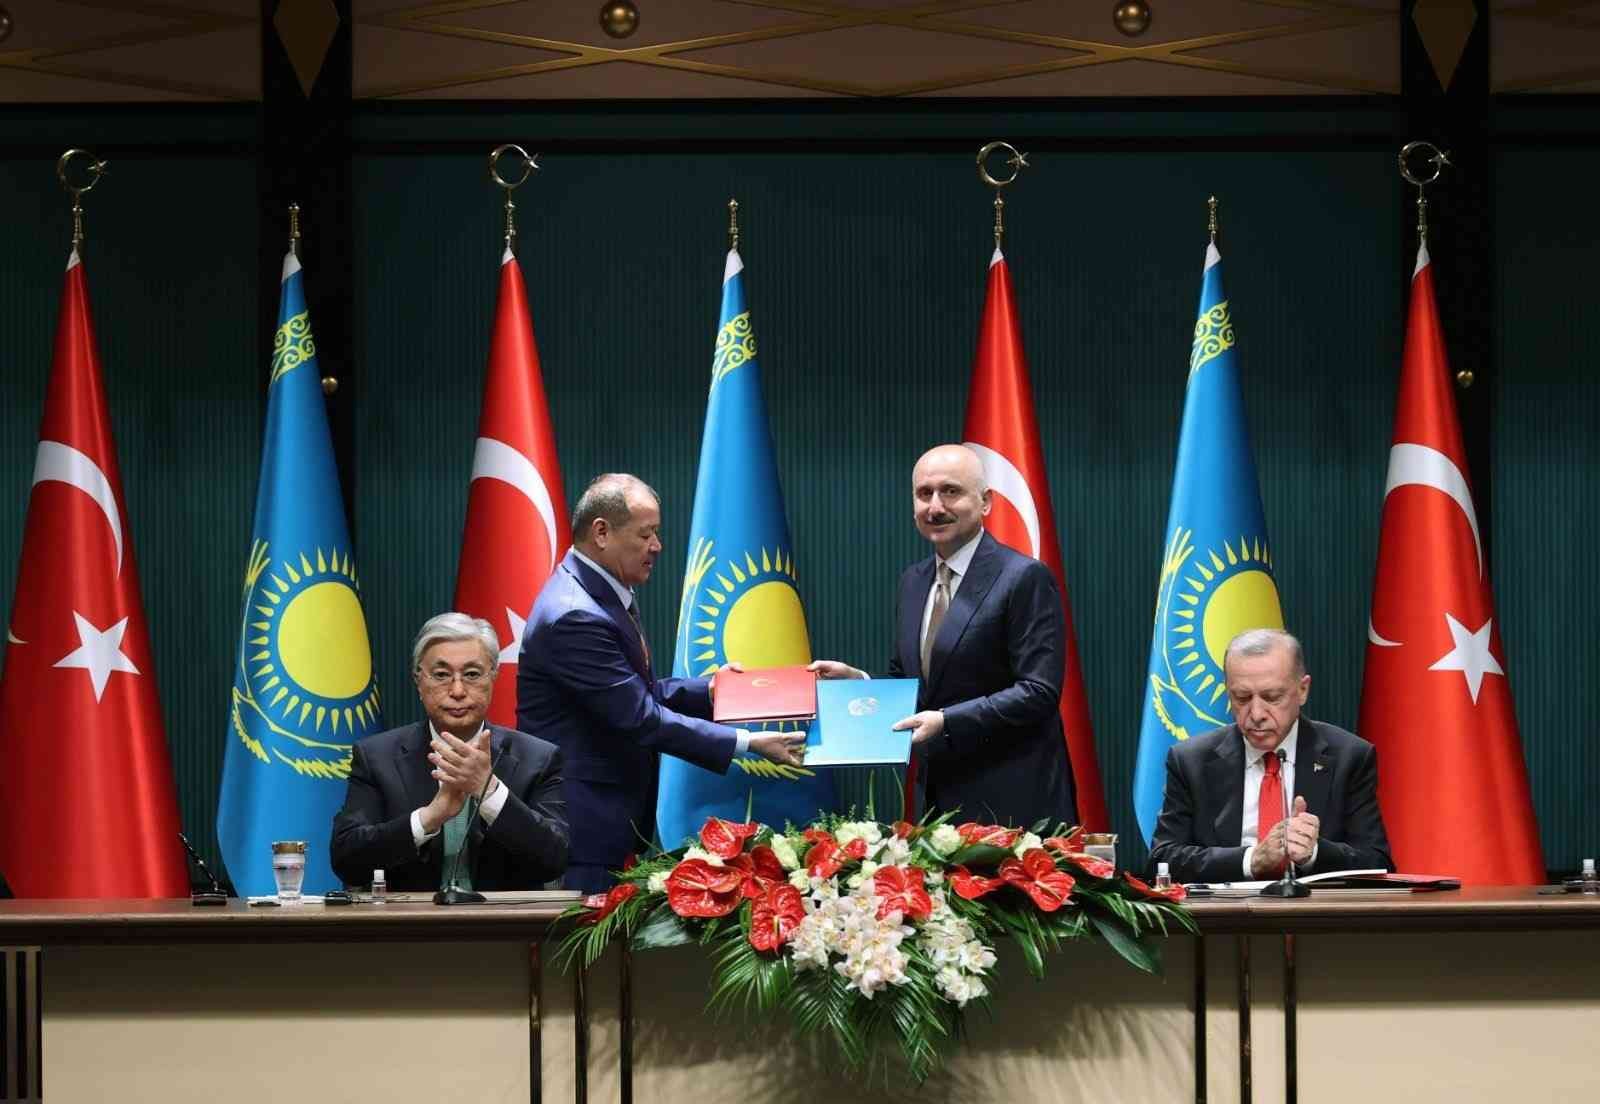 Bakan Karaismailoğlu: 'Kazakistan ile transit geçiş belgesi kotası 7,5 kat artacak'